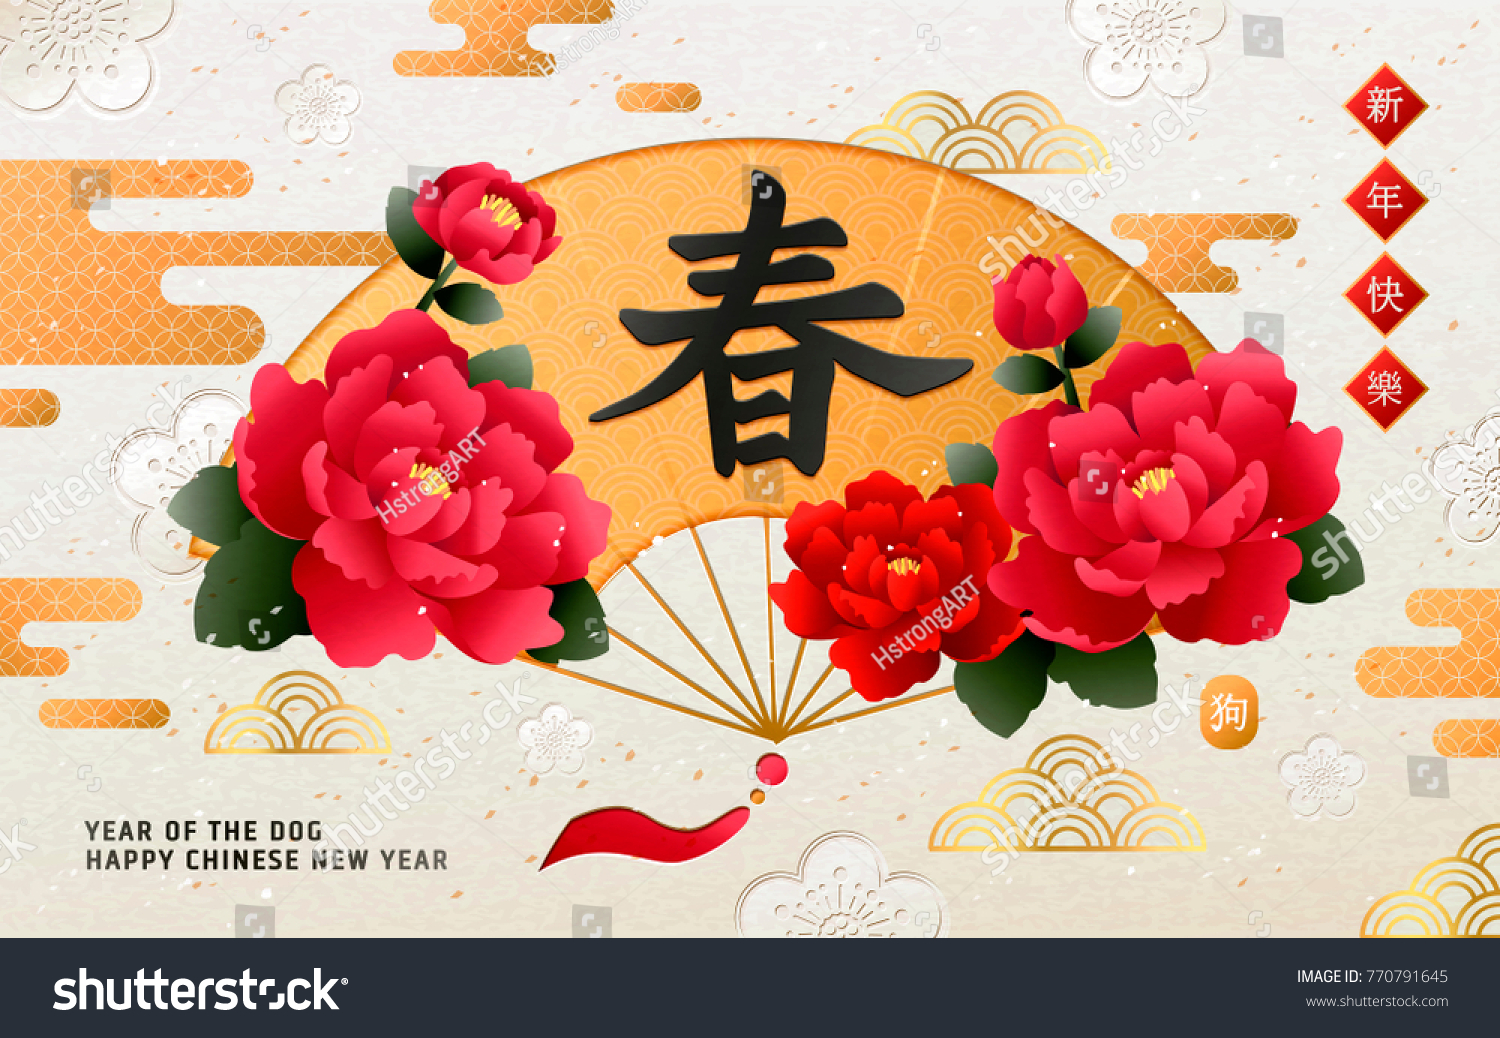 Китайские плакаты новогодние пионы